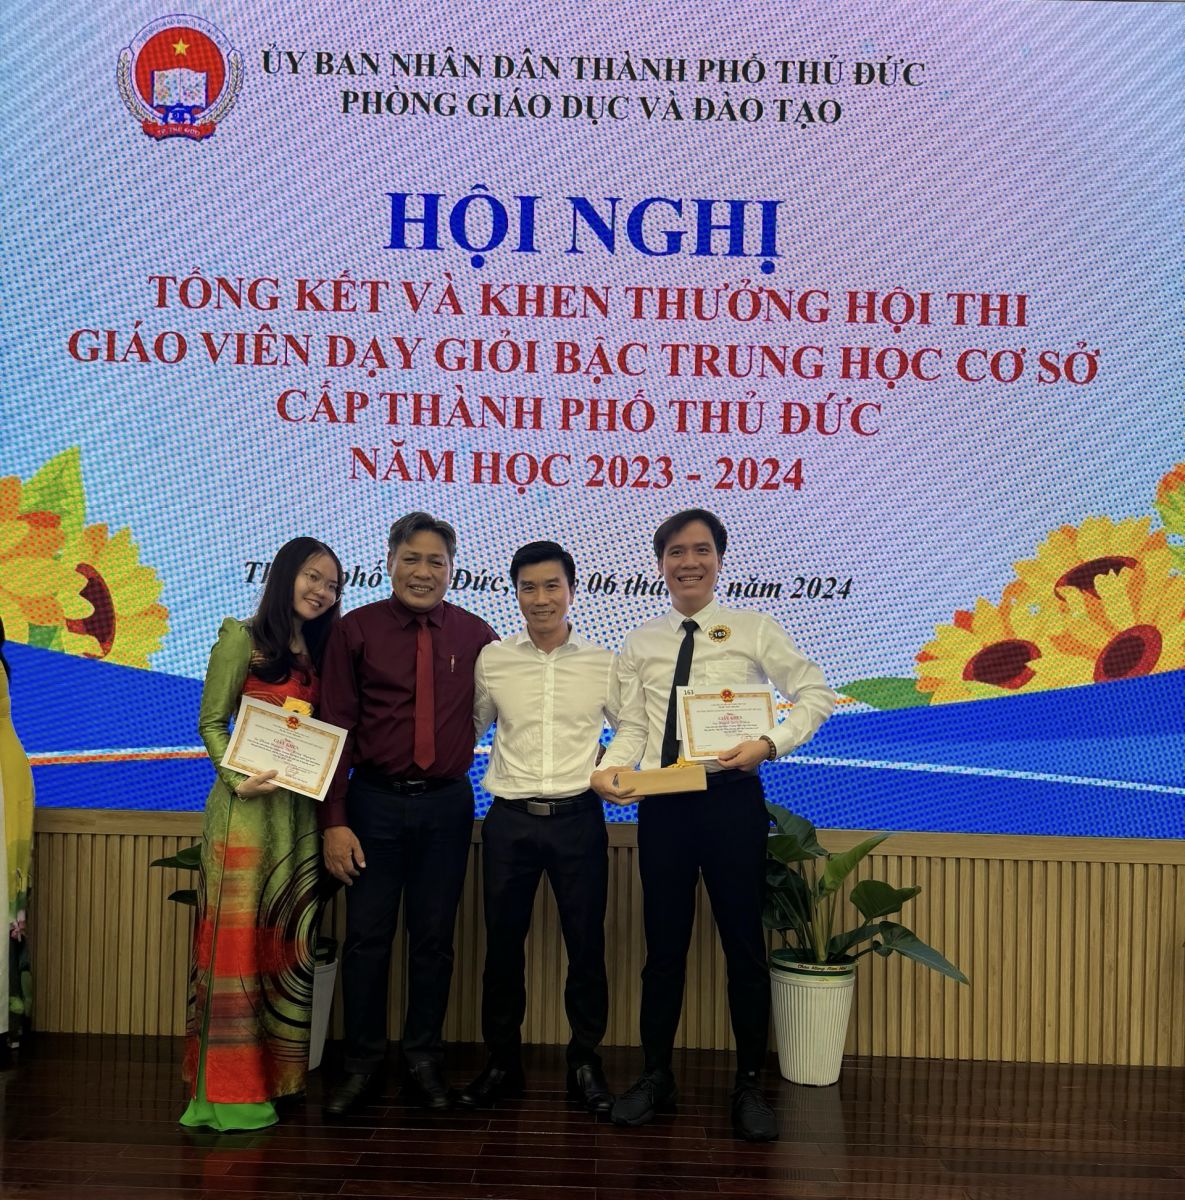 Từ trái sang phải: Cô Phạm Nguyễn Thị Hồng Nguyên, thầy Nguyễn Anh Phong, thầy Nguyễn Hữu Tài và thầy Huỳnh Quốc Thắng